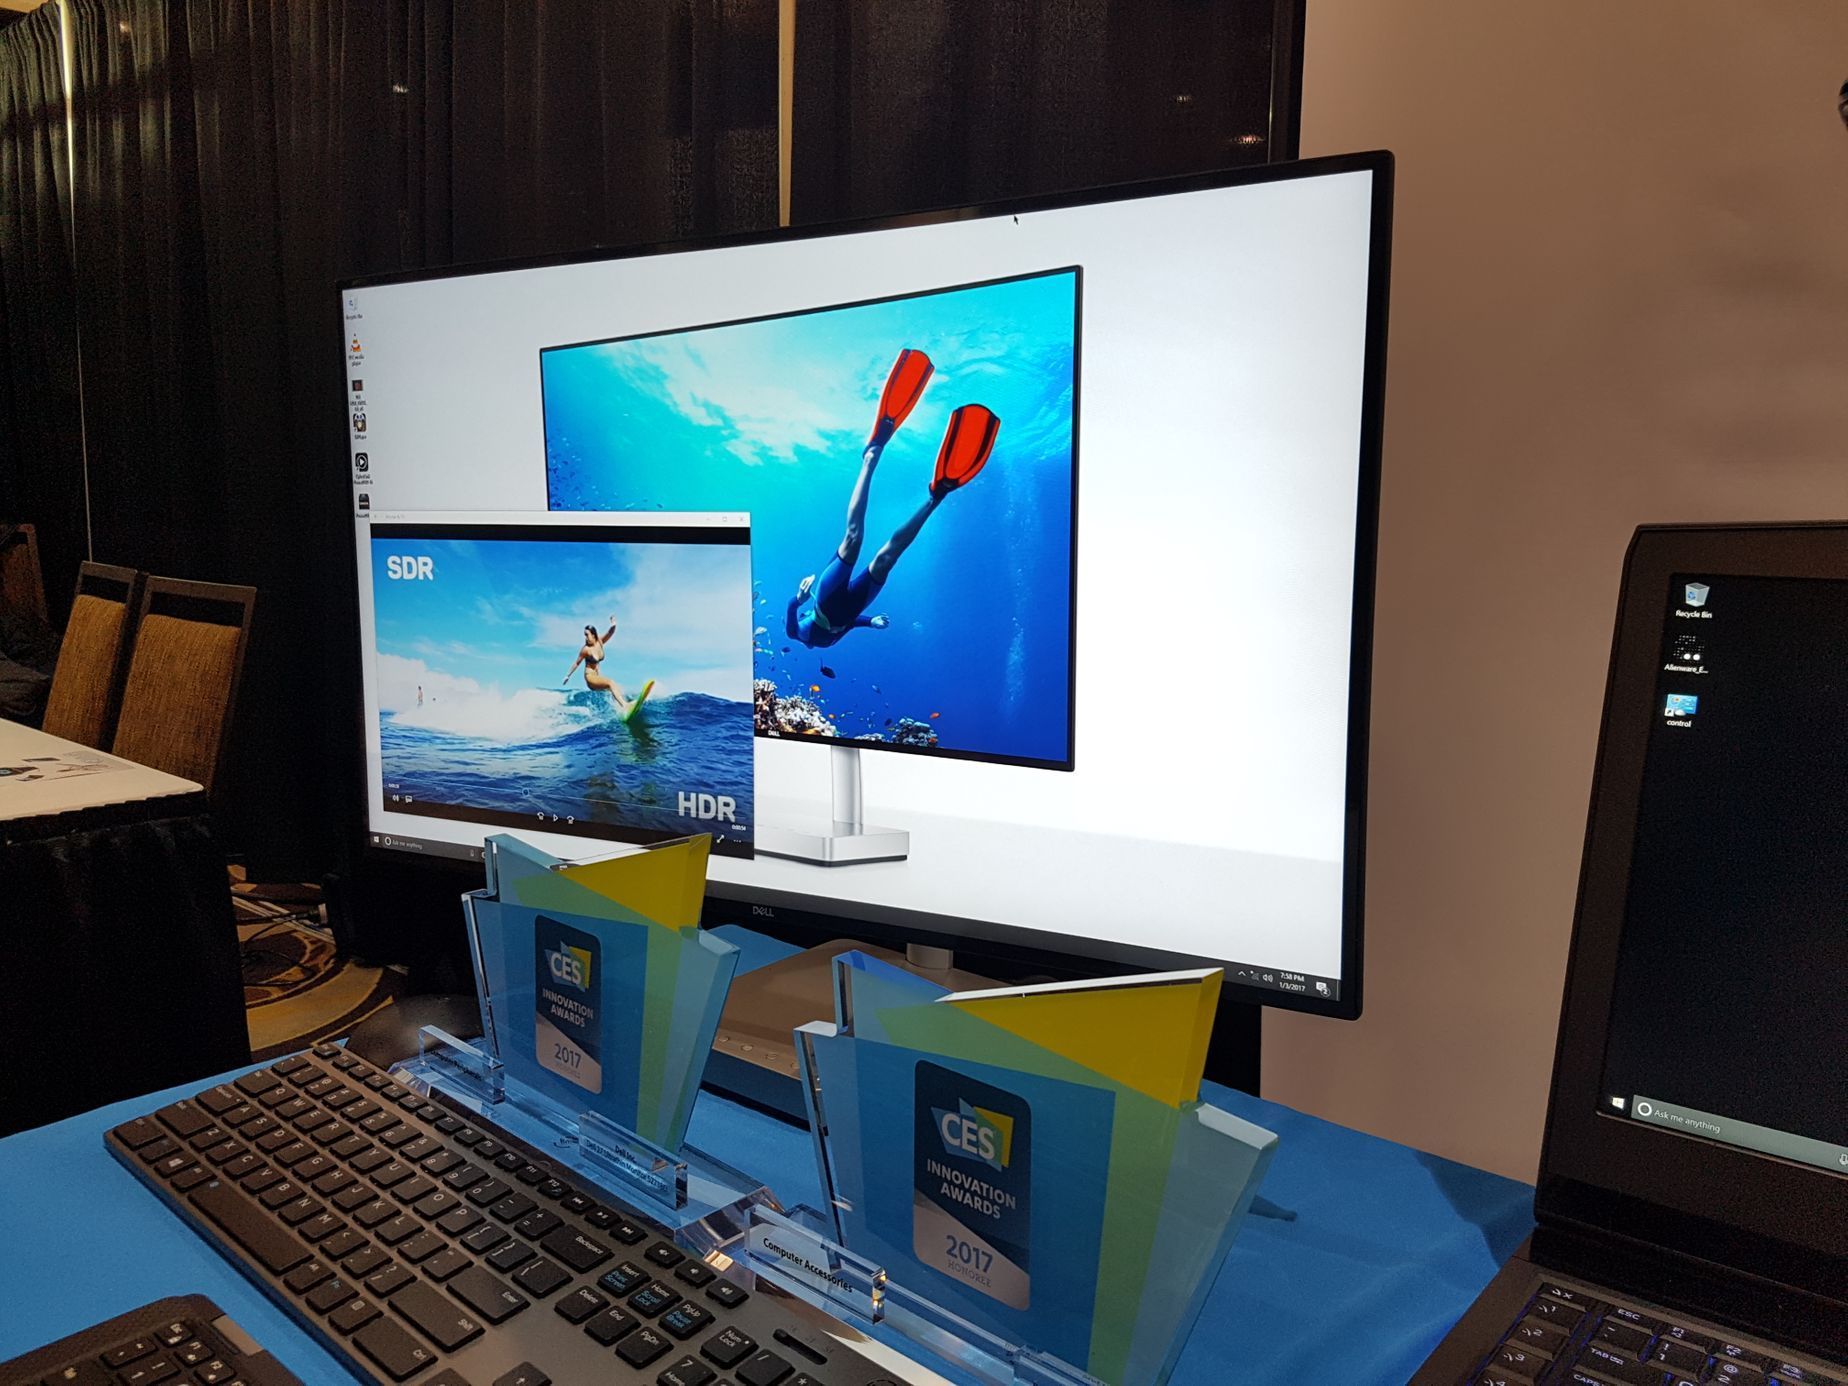 Počítačový monitor Dell s UltraHD rozlišením a podporou HDR